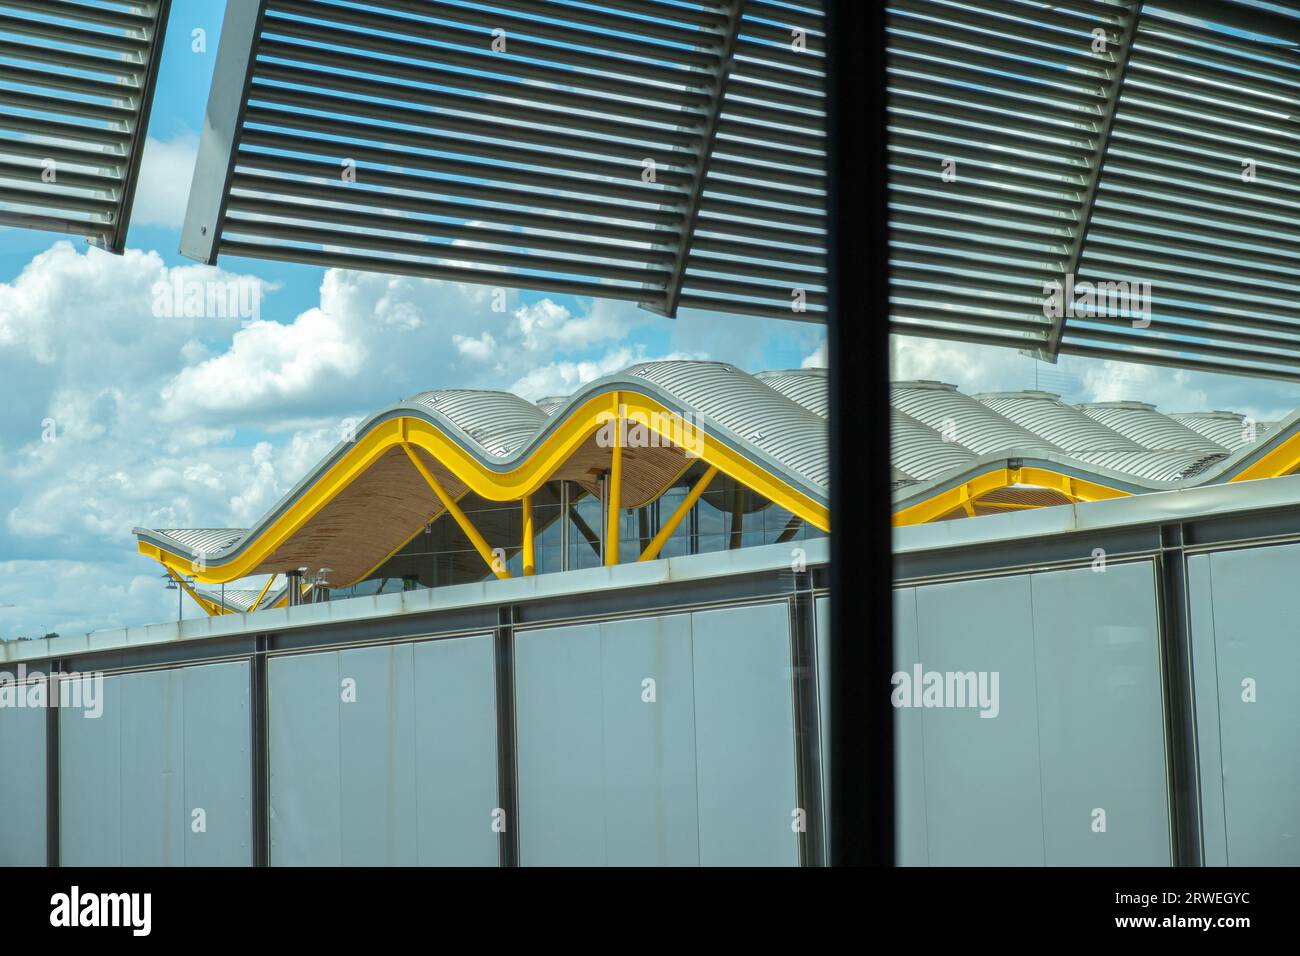 Madrid, Spagna 05 26 2018: Vista esterna del tetto del terminal T4 dell'aeroporto di Madrid. Adolfo Suarez-Barajas Foto Stock